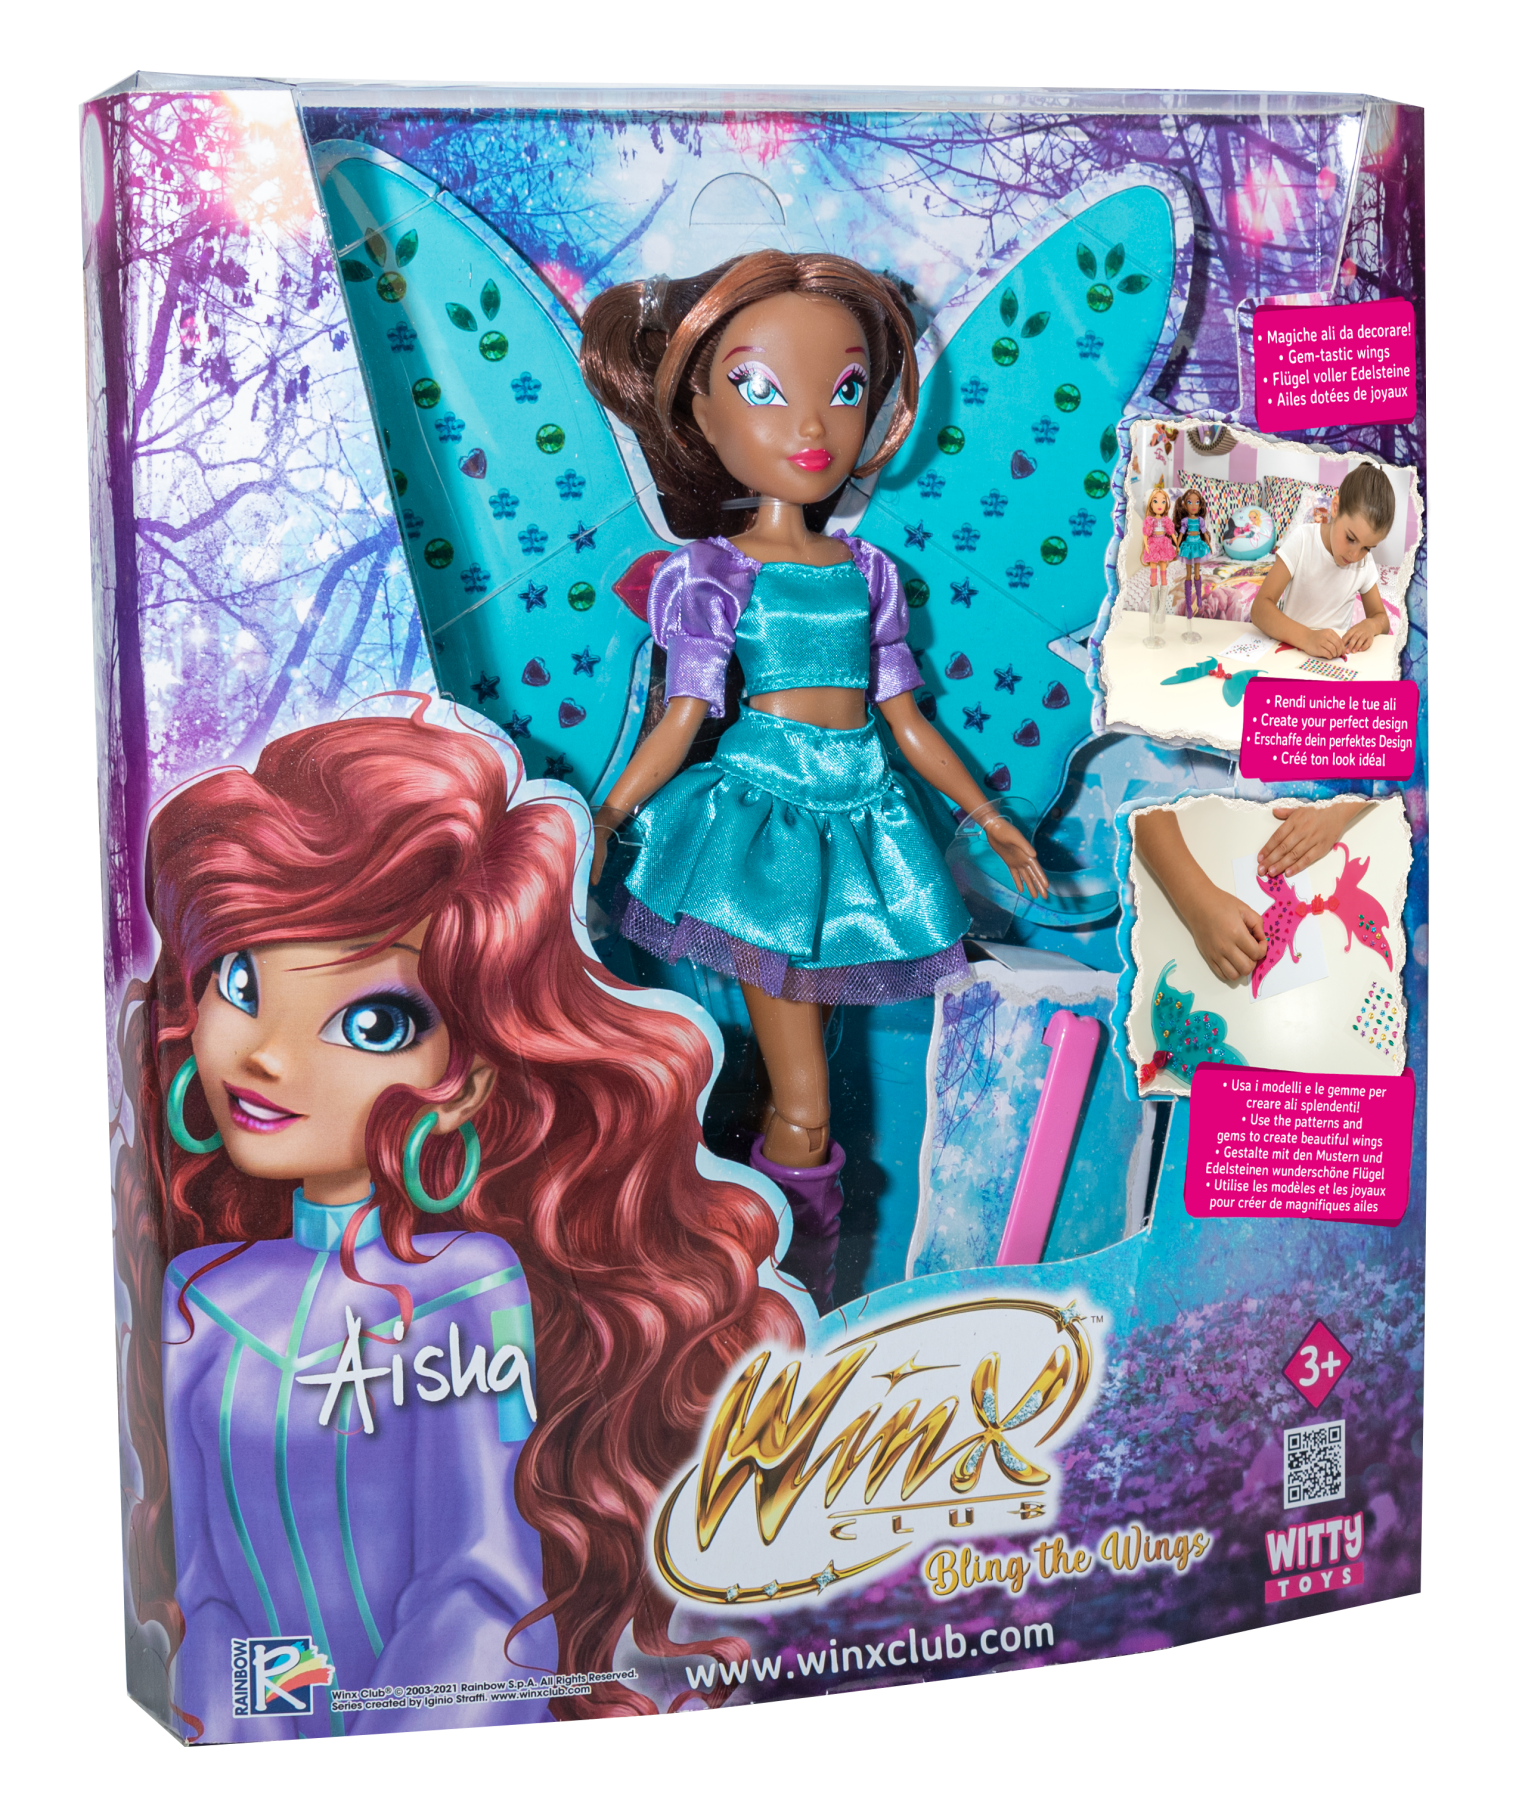 Winx doll - bambola bling the wings personaggio aisha alta cm 23 - WINX